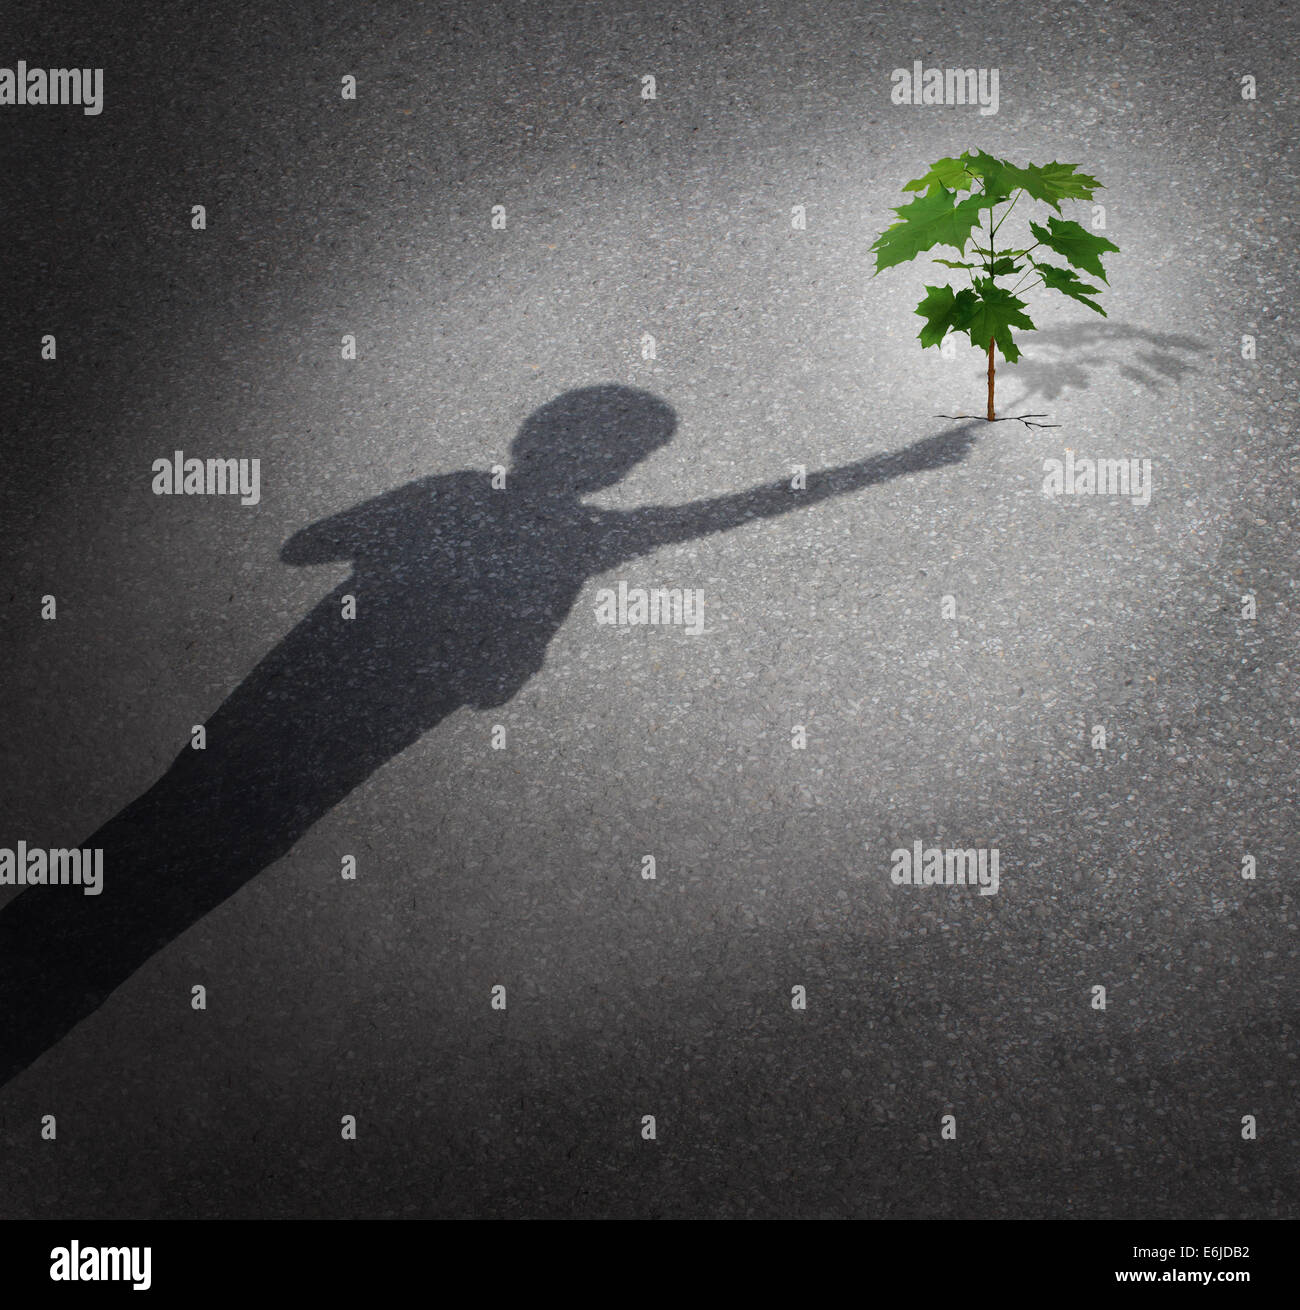 La vita e la speranza come un concetto di crescita con un'ombra di un bambino di toccare un albero alberello cresce attraverso la pavimentazione della città come un simbolo per il futuro la tutela ambientale e il sostegno della prossima generazione. Foto Stock